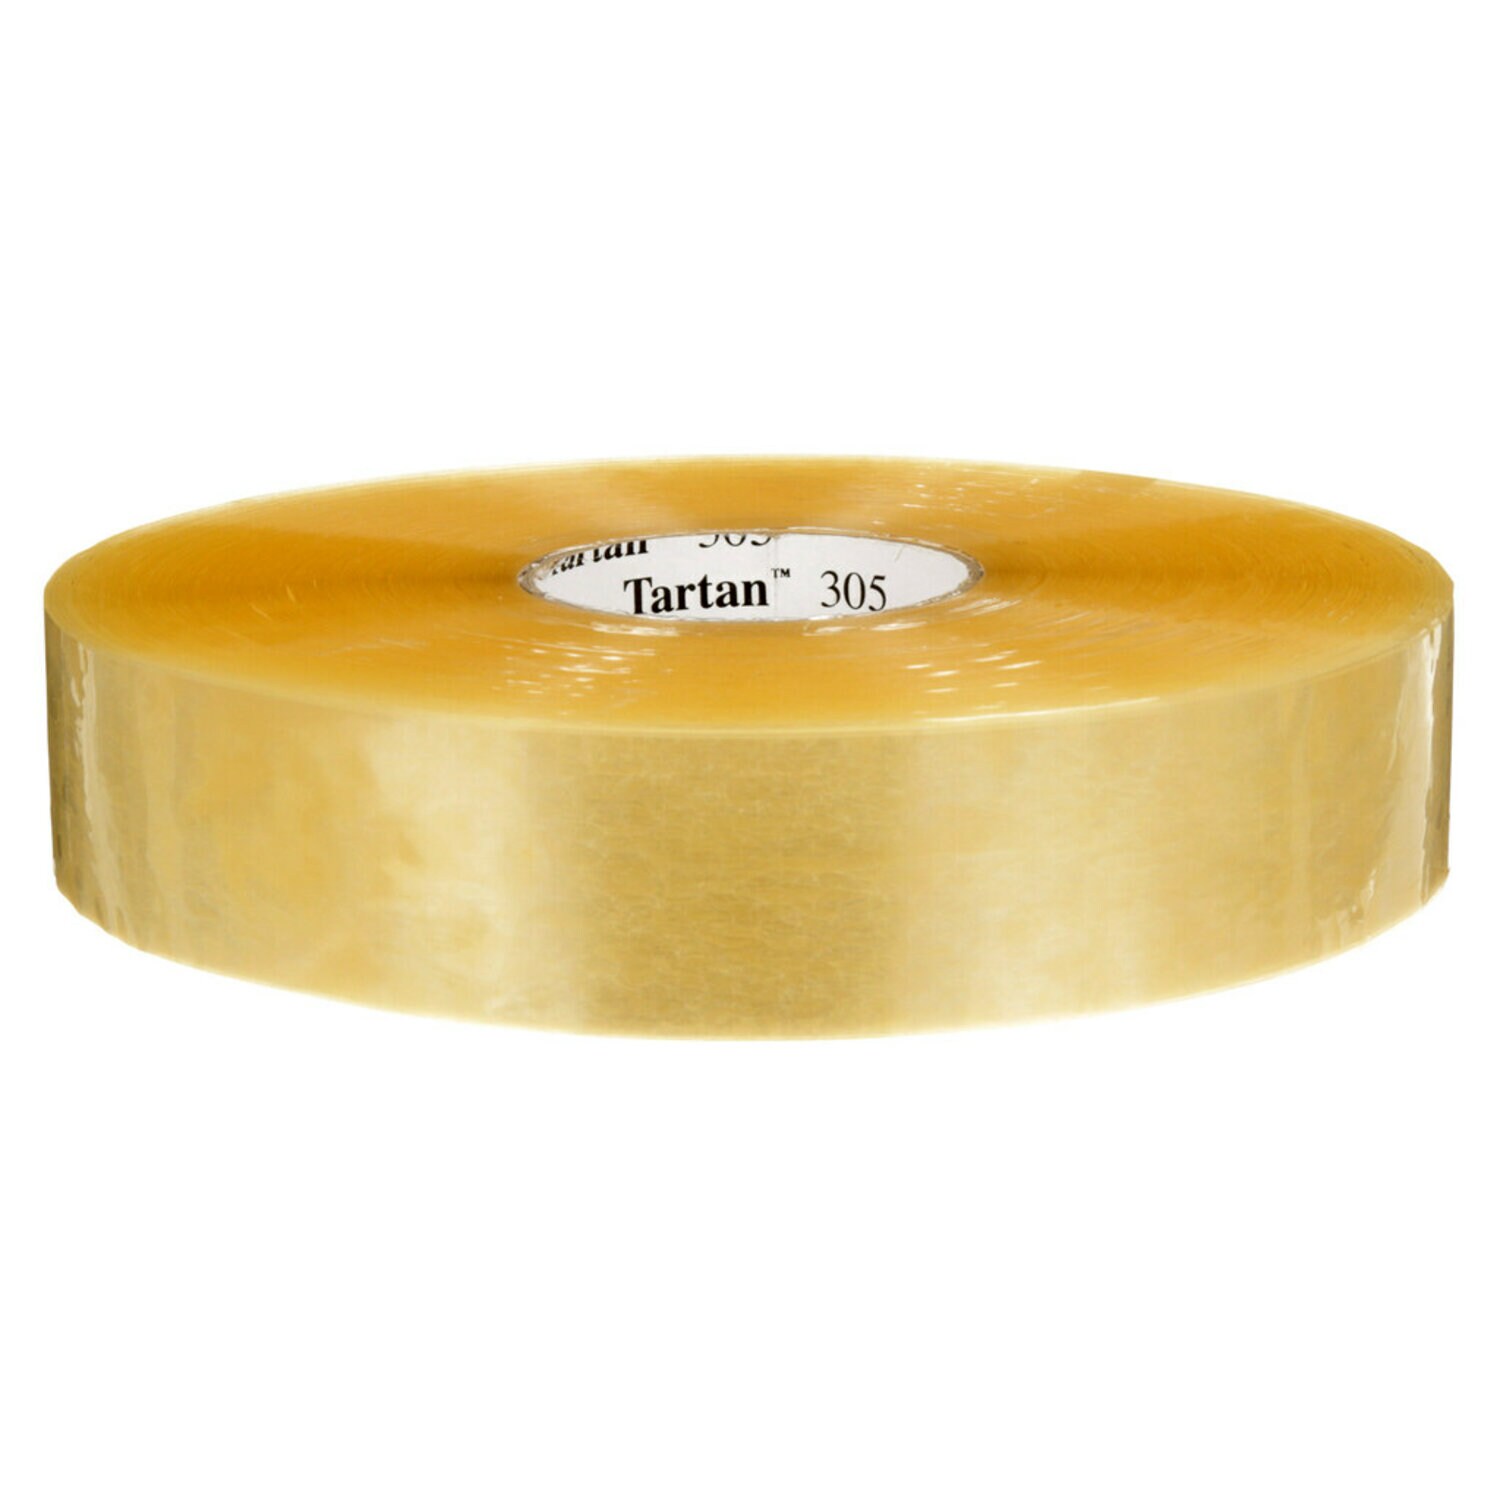 7100240691 - Tartan  Box Sealing Tape 305, Clear, 48 mm x 914 m, 6 Rolls/Case